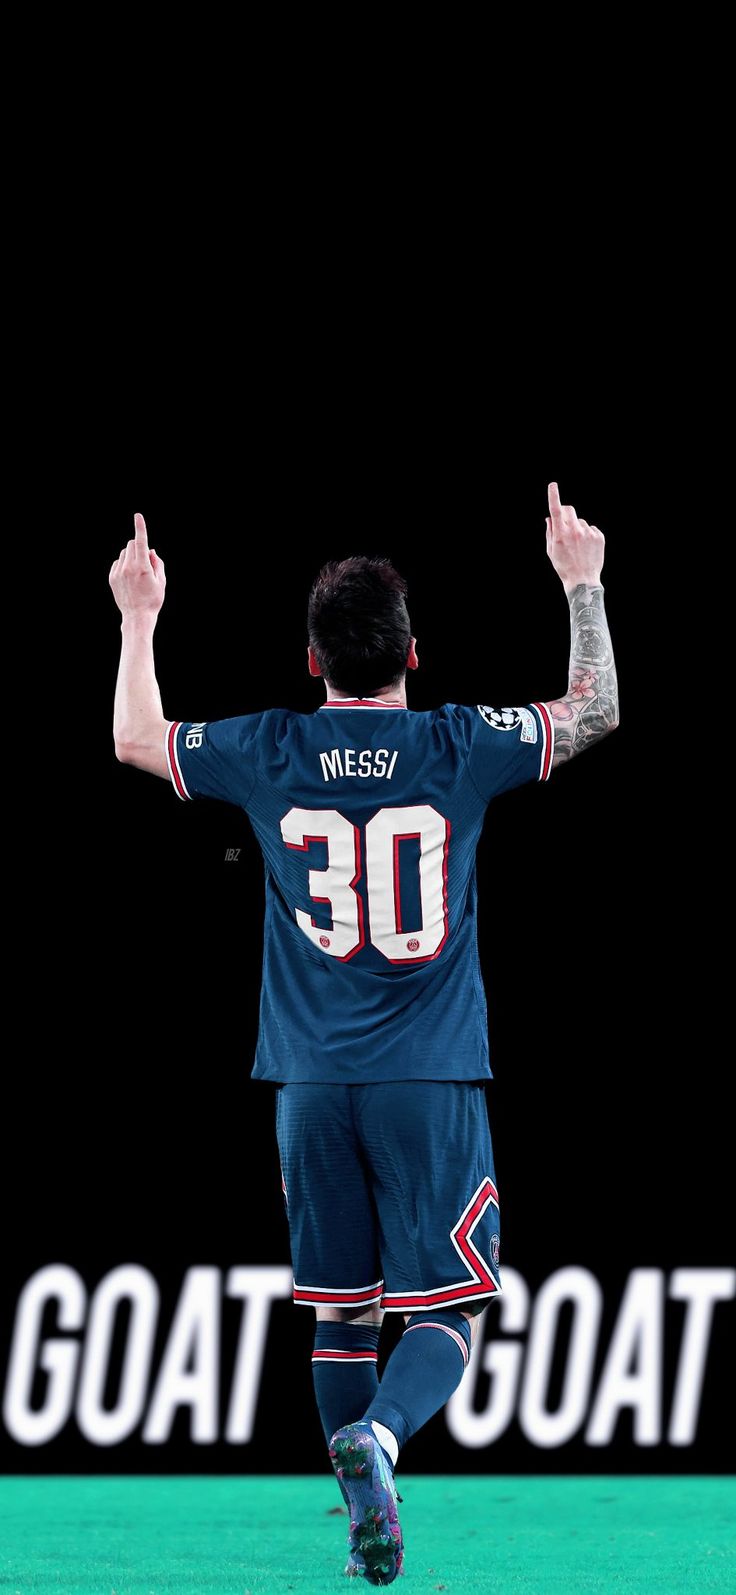 Hãy xem hình ảnh về Messi - ngôi sao bóng đá nổi tiếng và có tài năng vượt trội trong ngành. Sự tinh tế trong phong cách chơi bóng của anh, được phản ánh bằng nhiều giải thưởng quốc tế, giúp Messi trở thành một huyền thoại trong làng bóng đá.